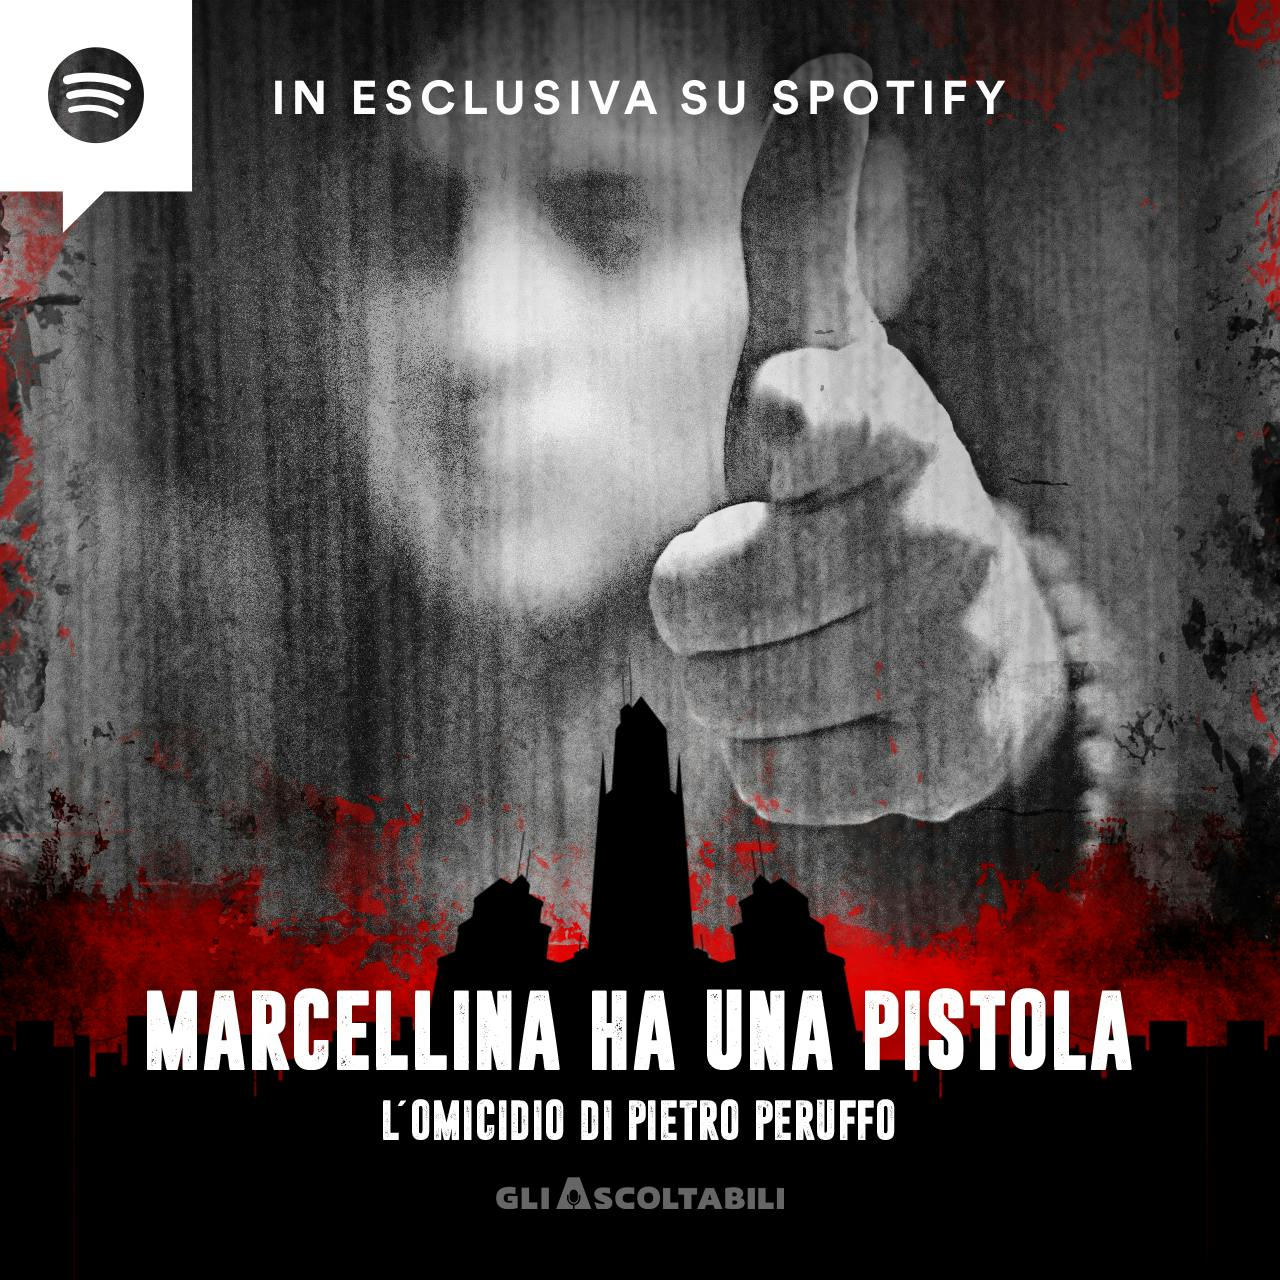 Marcellina ha una pistola - L'omicidio di Pietro Peruffo